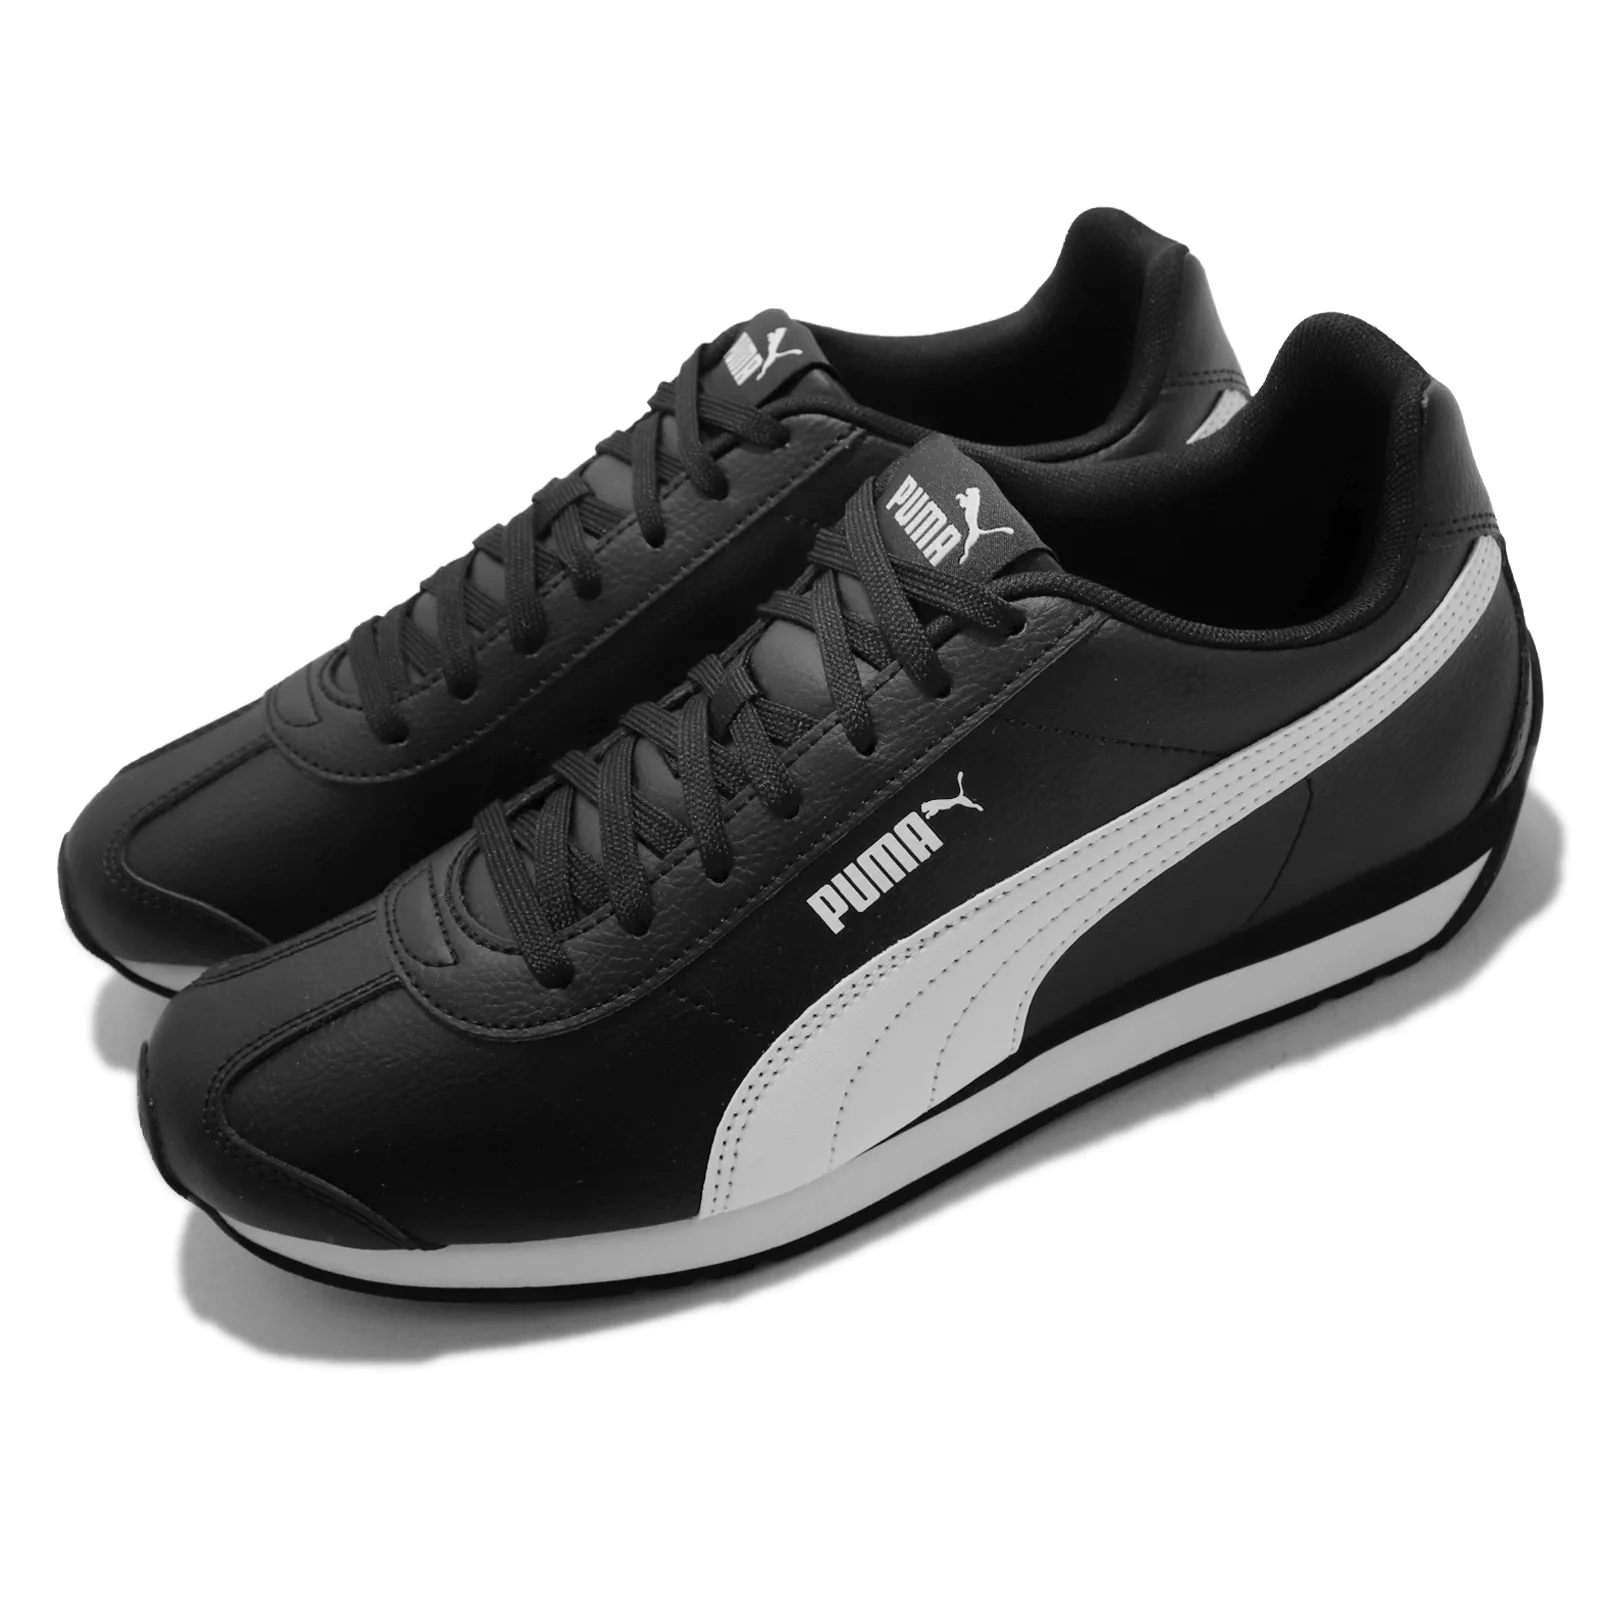 Puma Turin 3 休閒鞋 黑 白 復古慢跑鞋 皮革 男鞋 女鞋 情侶鞋 運動鞋 38303705